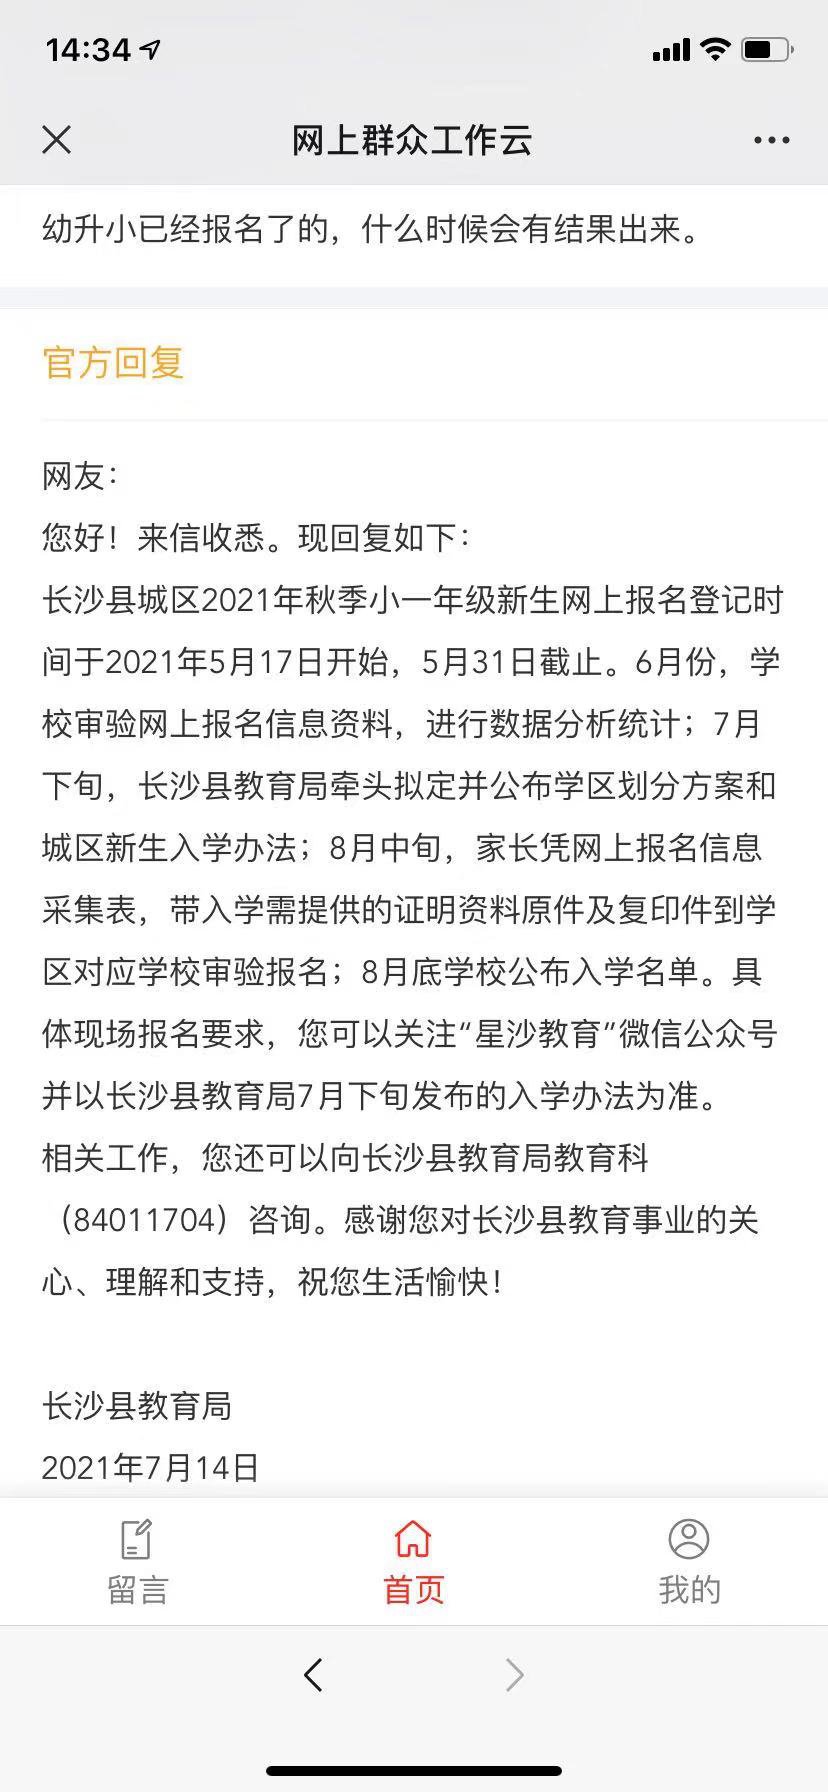 2021年秋季长沙县幼升小入学名单8月底公布